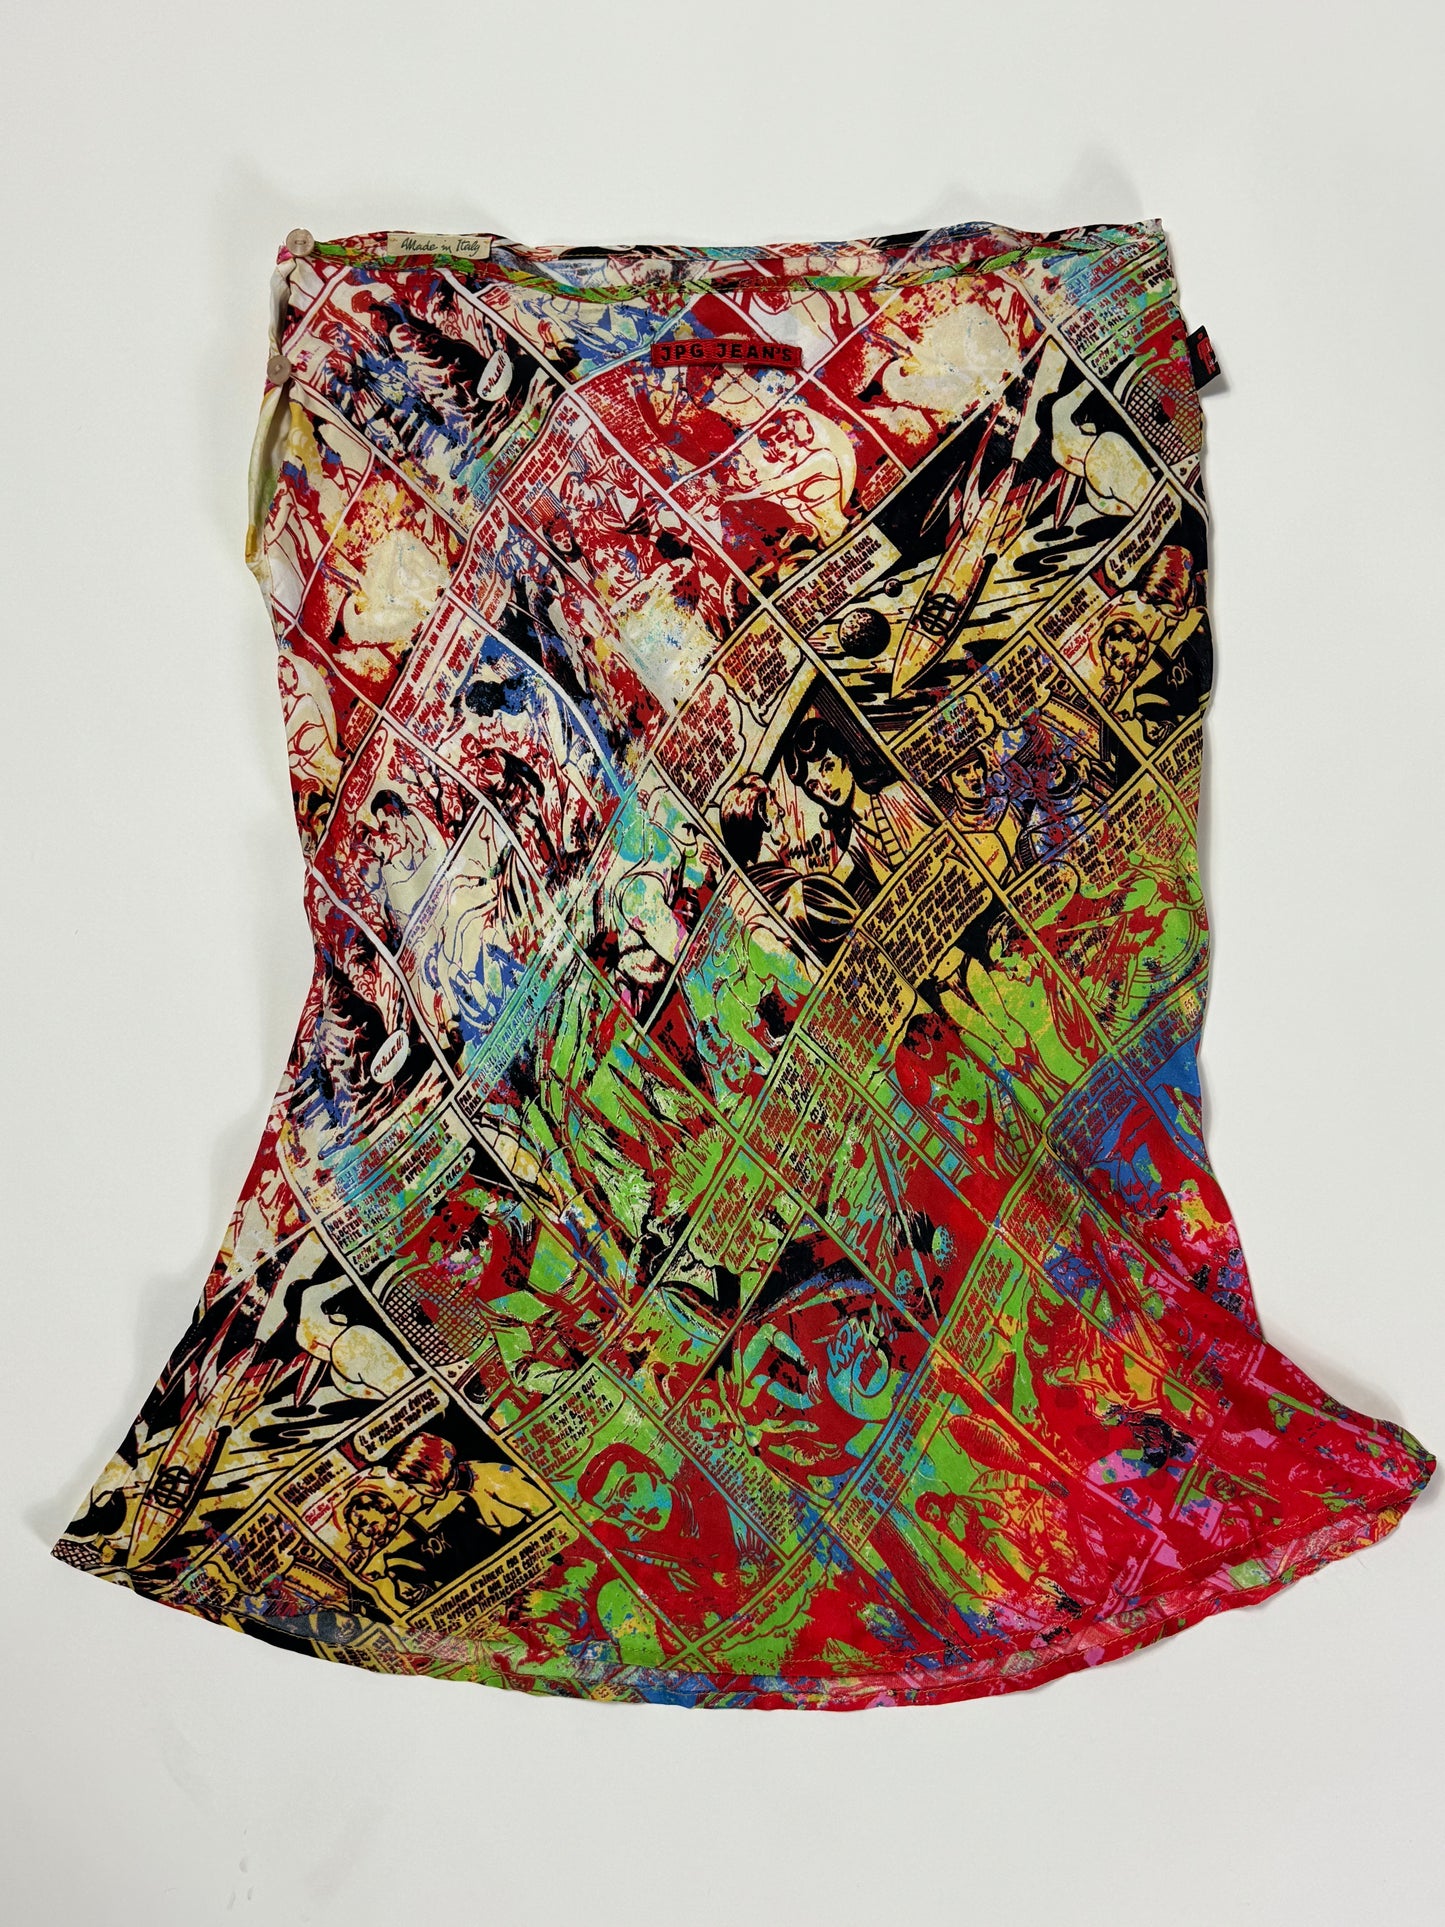 Jean Paul Gaultier 90s Pop Art Skirt